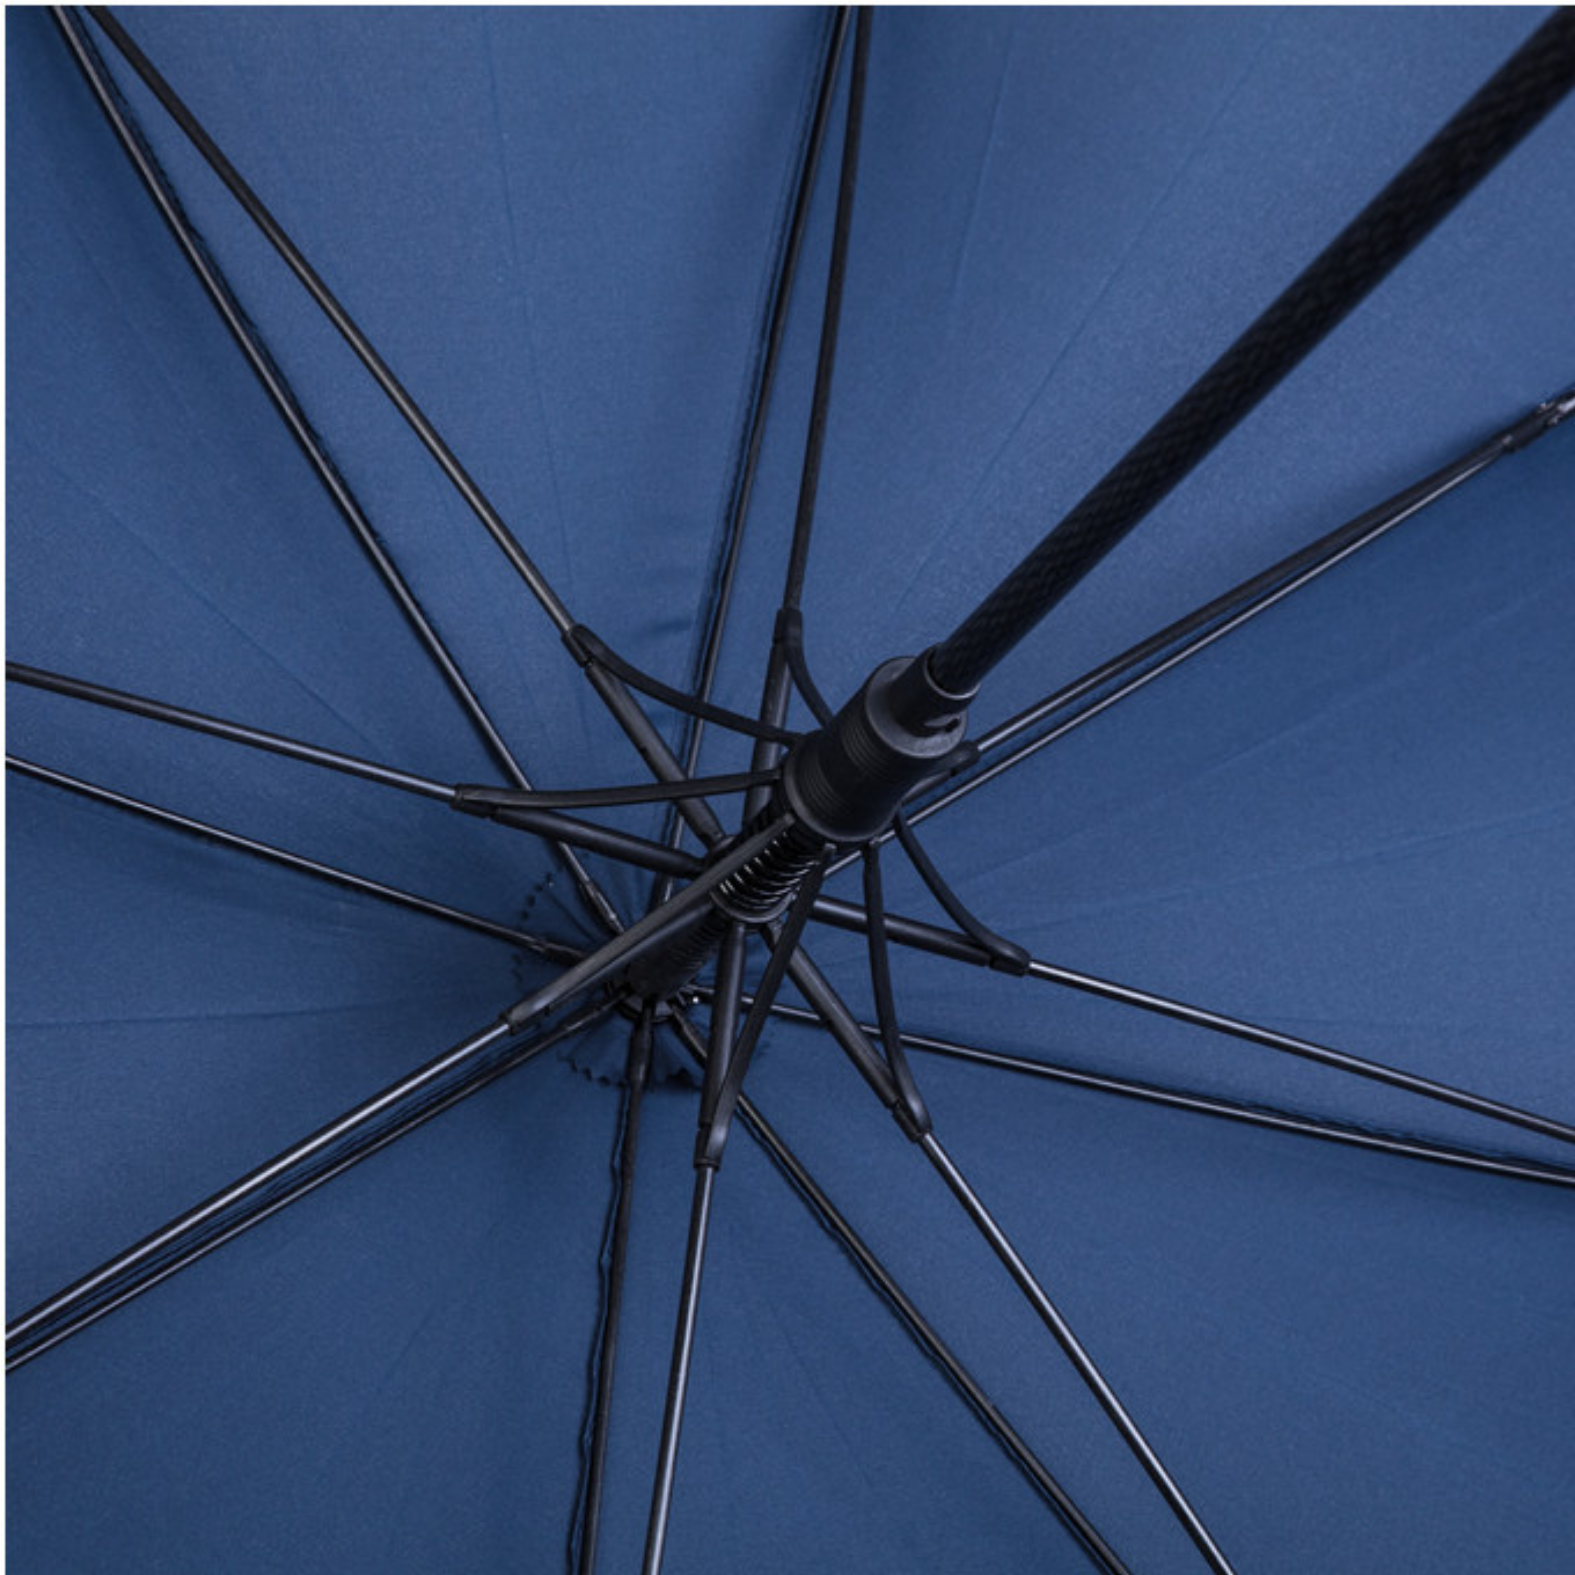 ombrelli personalizzati